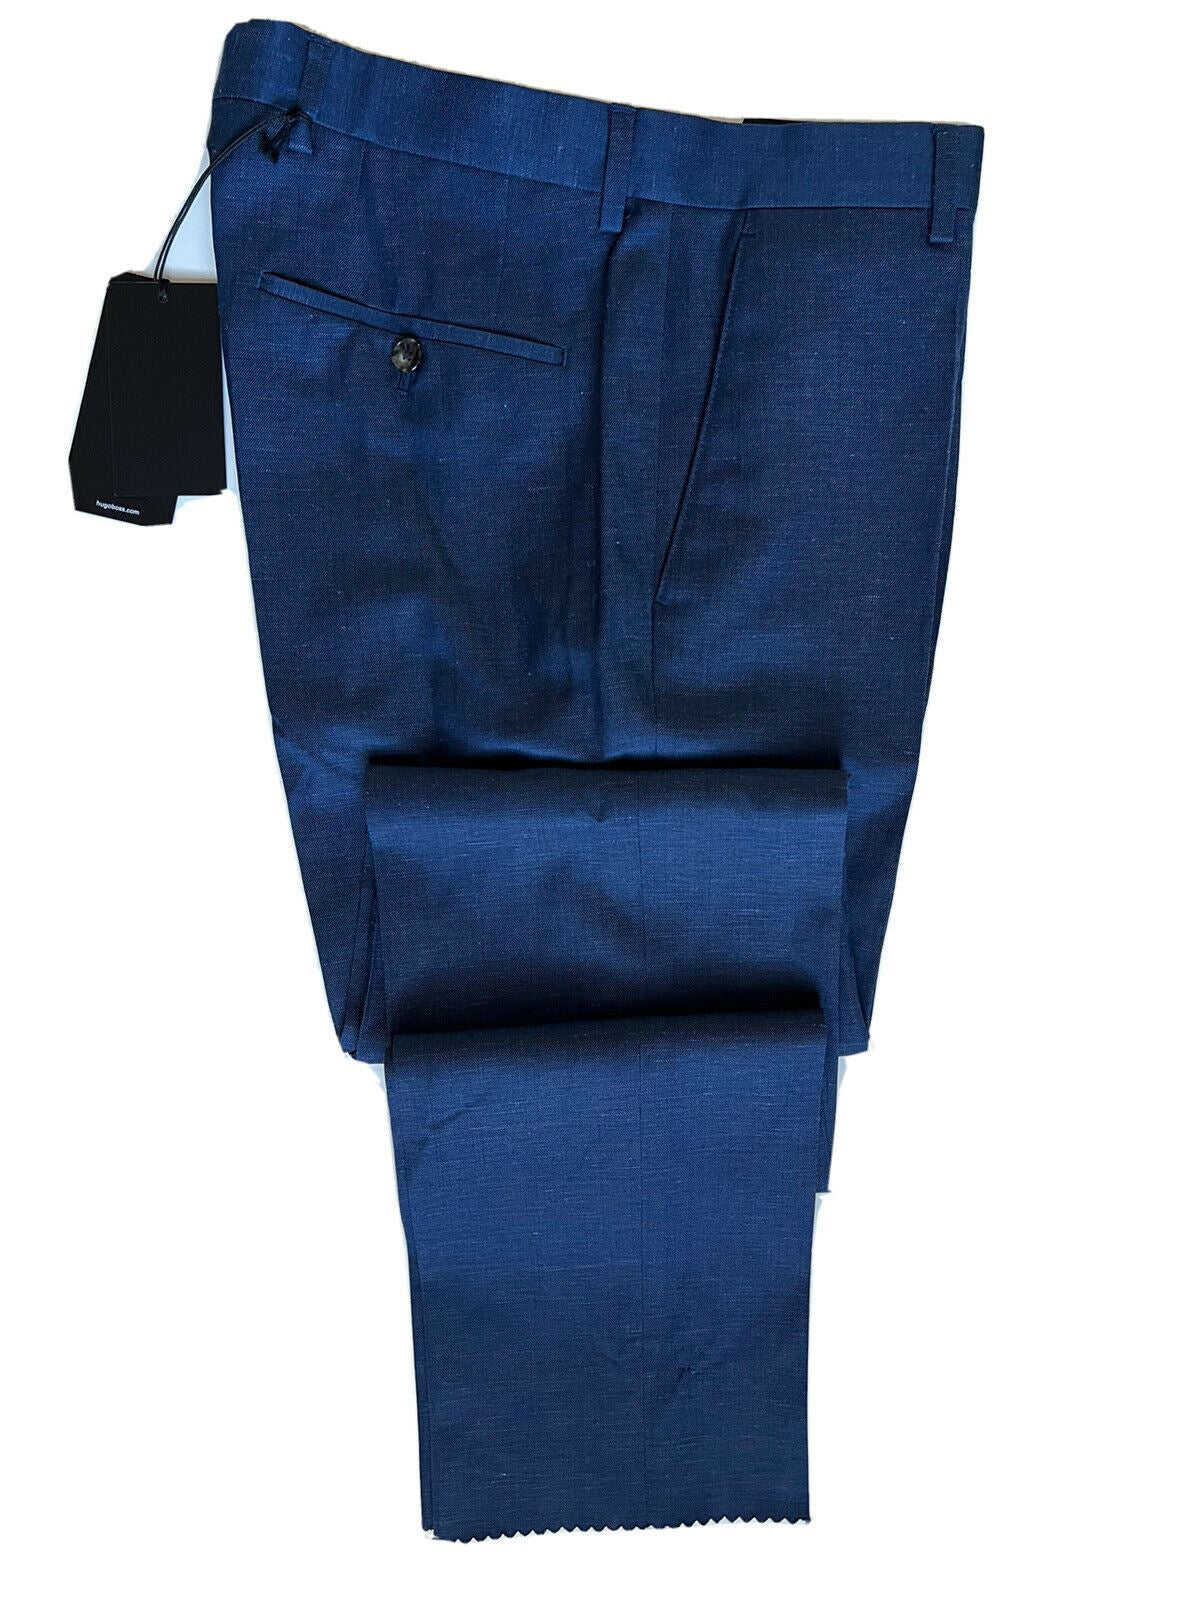 Neu mit Etikett: 245 $ Boss Hugo Boss Genesis4 Herren-Anzughose aus Wolle/Leinen in Blau, Größe 30 US